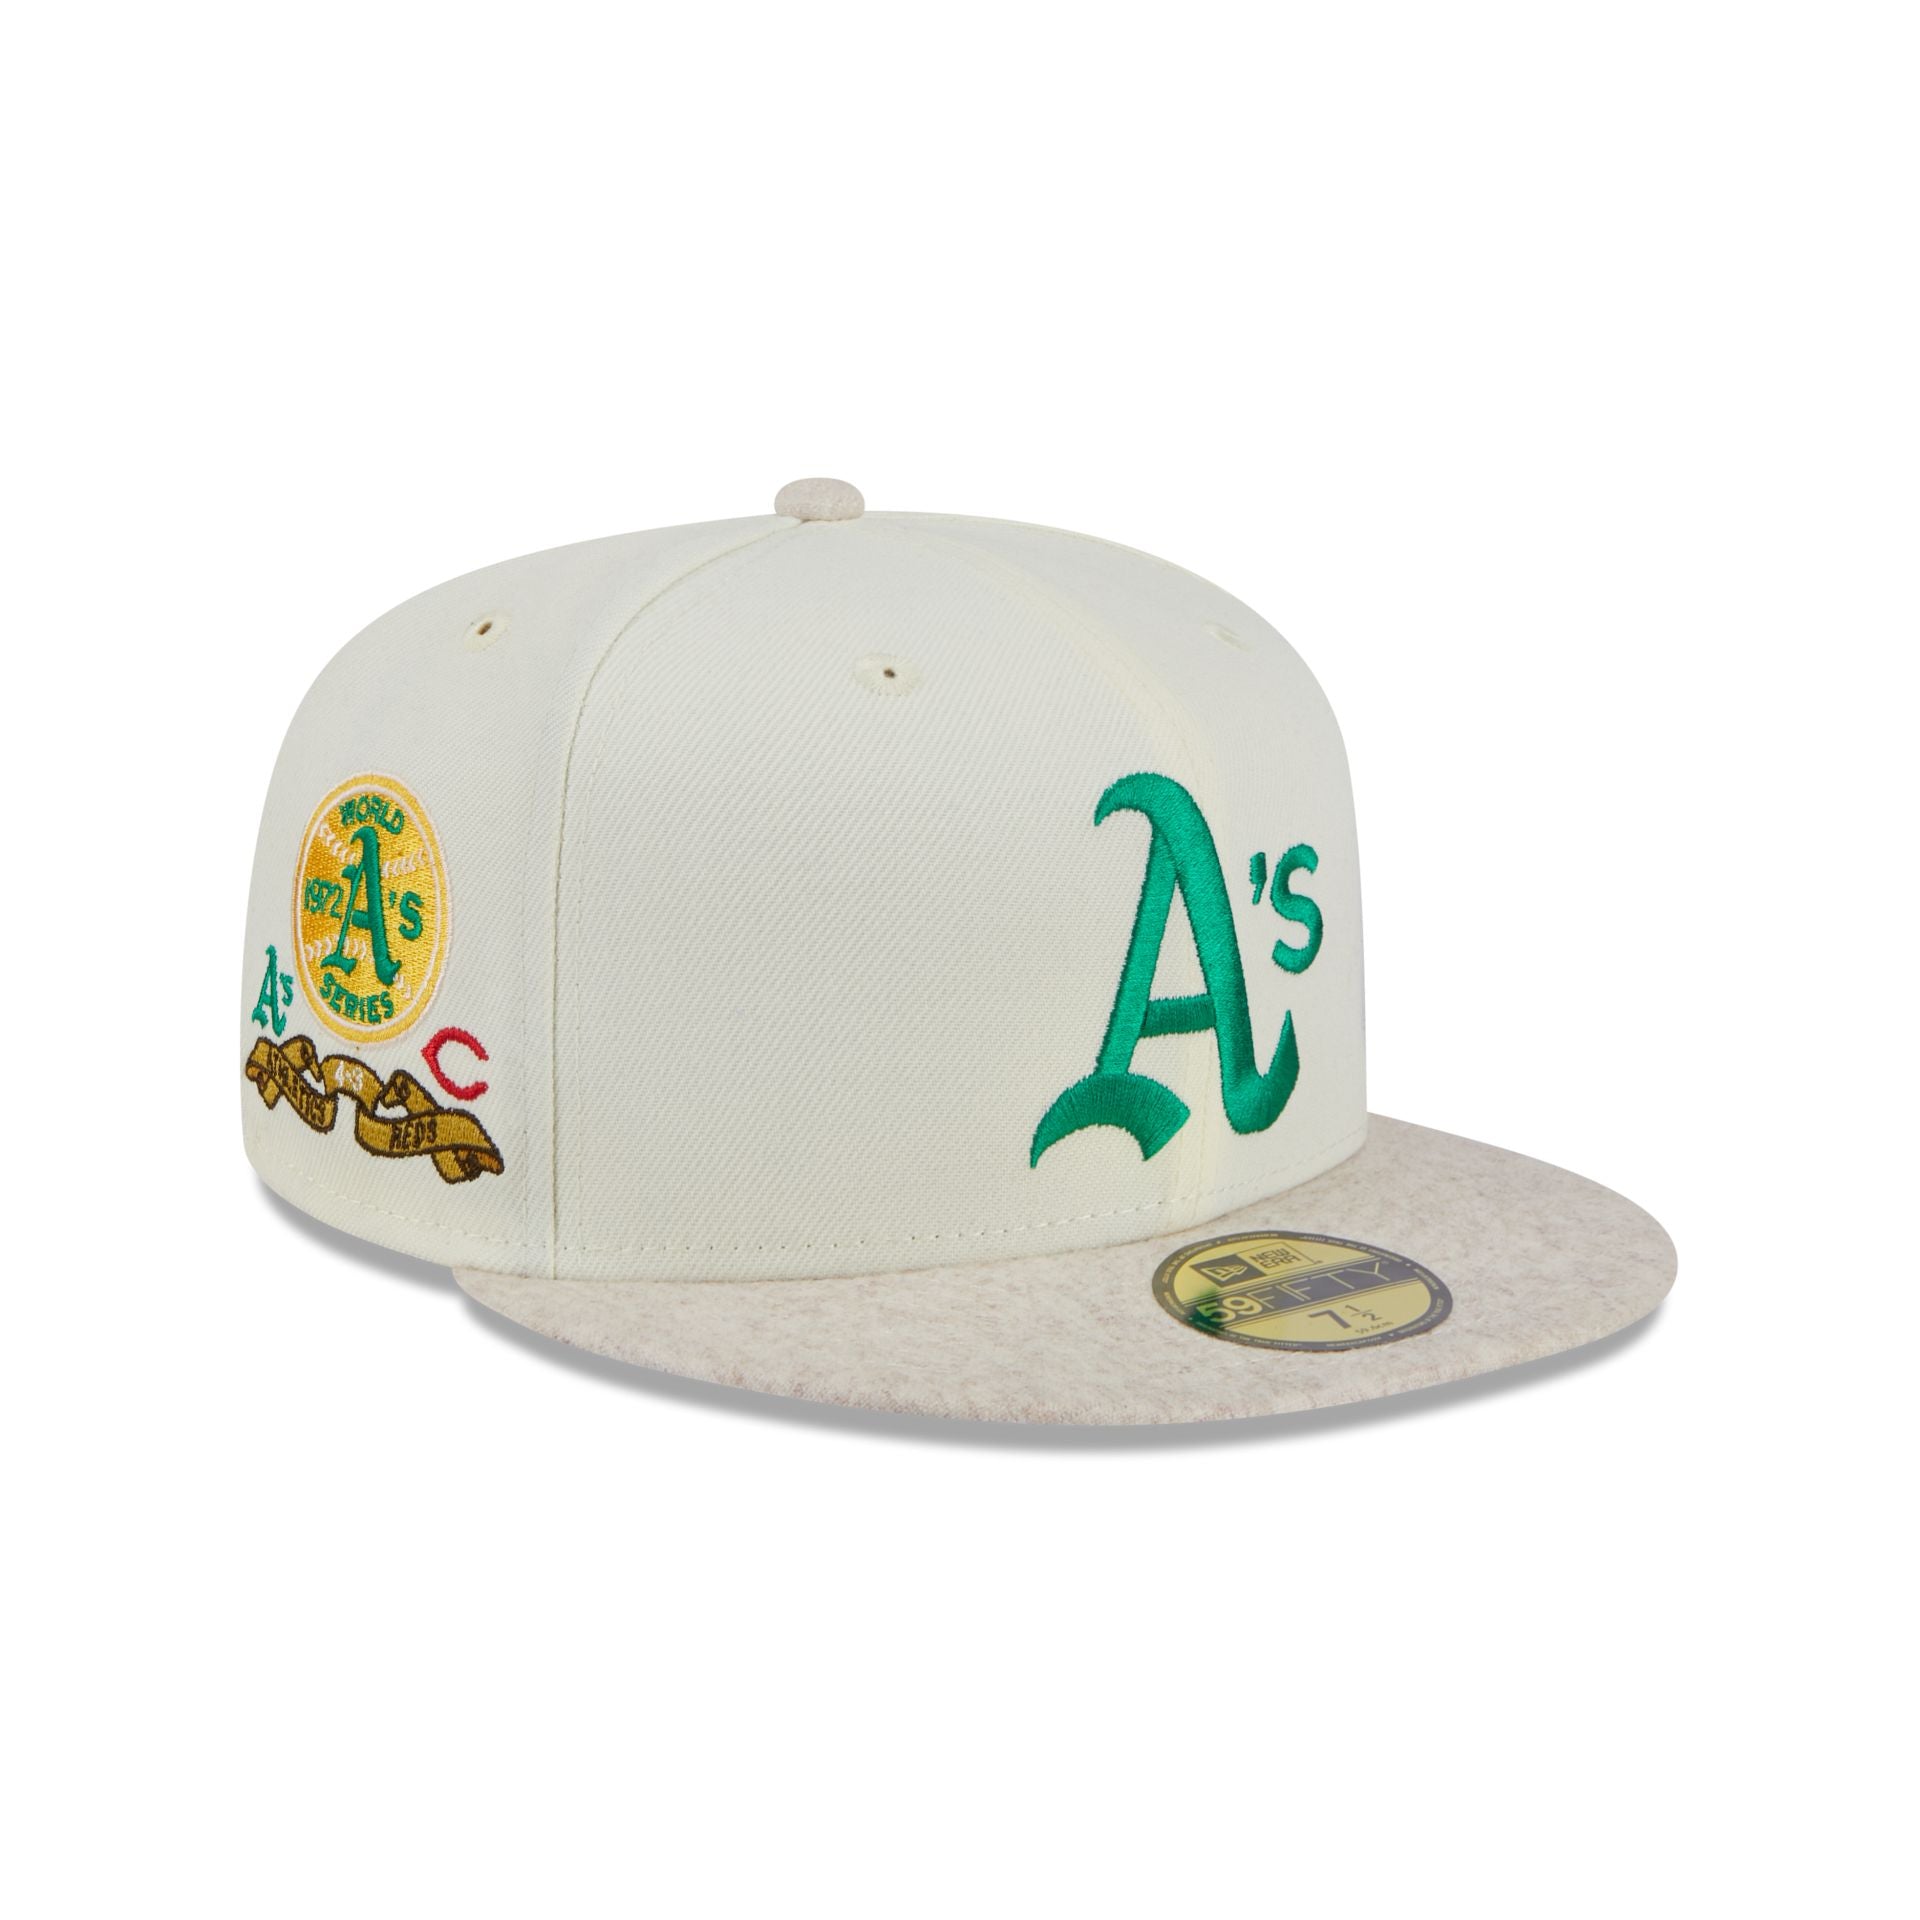 Oakland Athletics Hats New & Era Caps – Cap